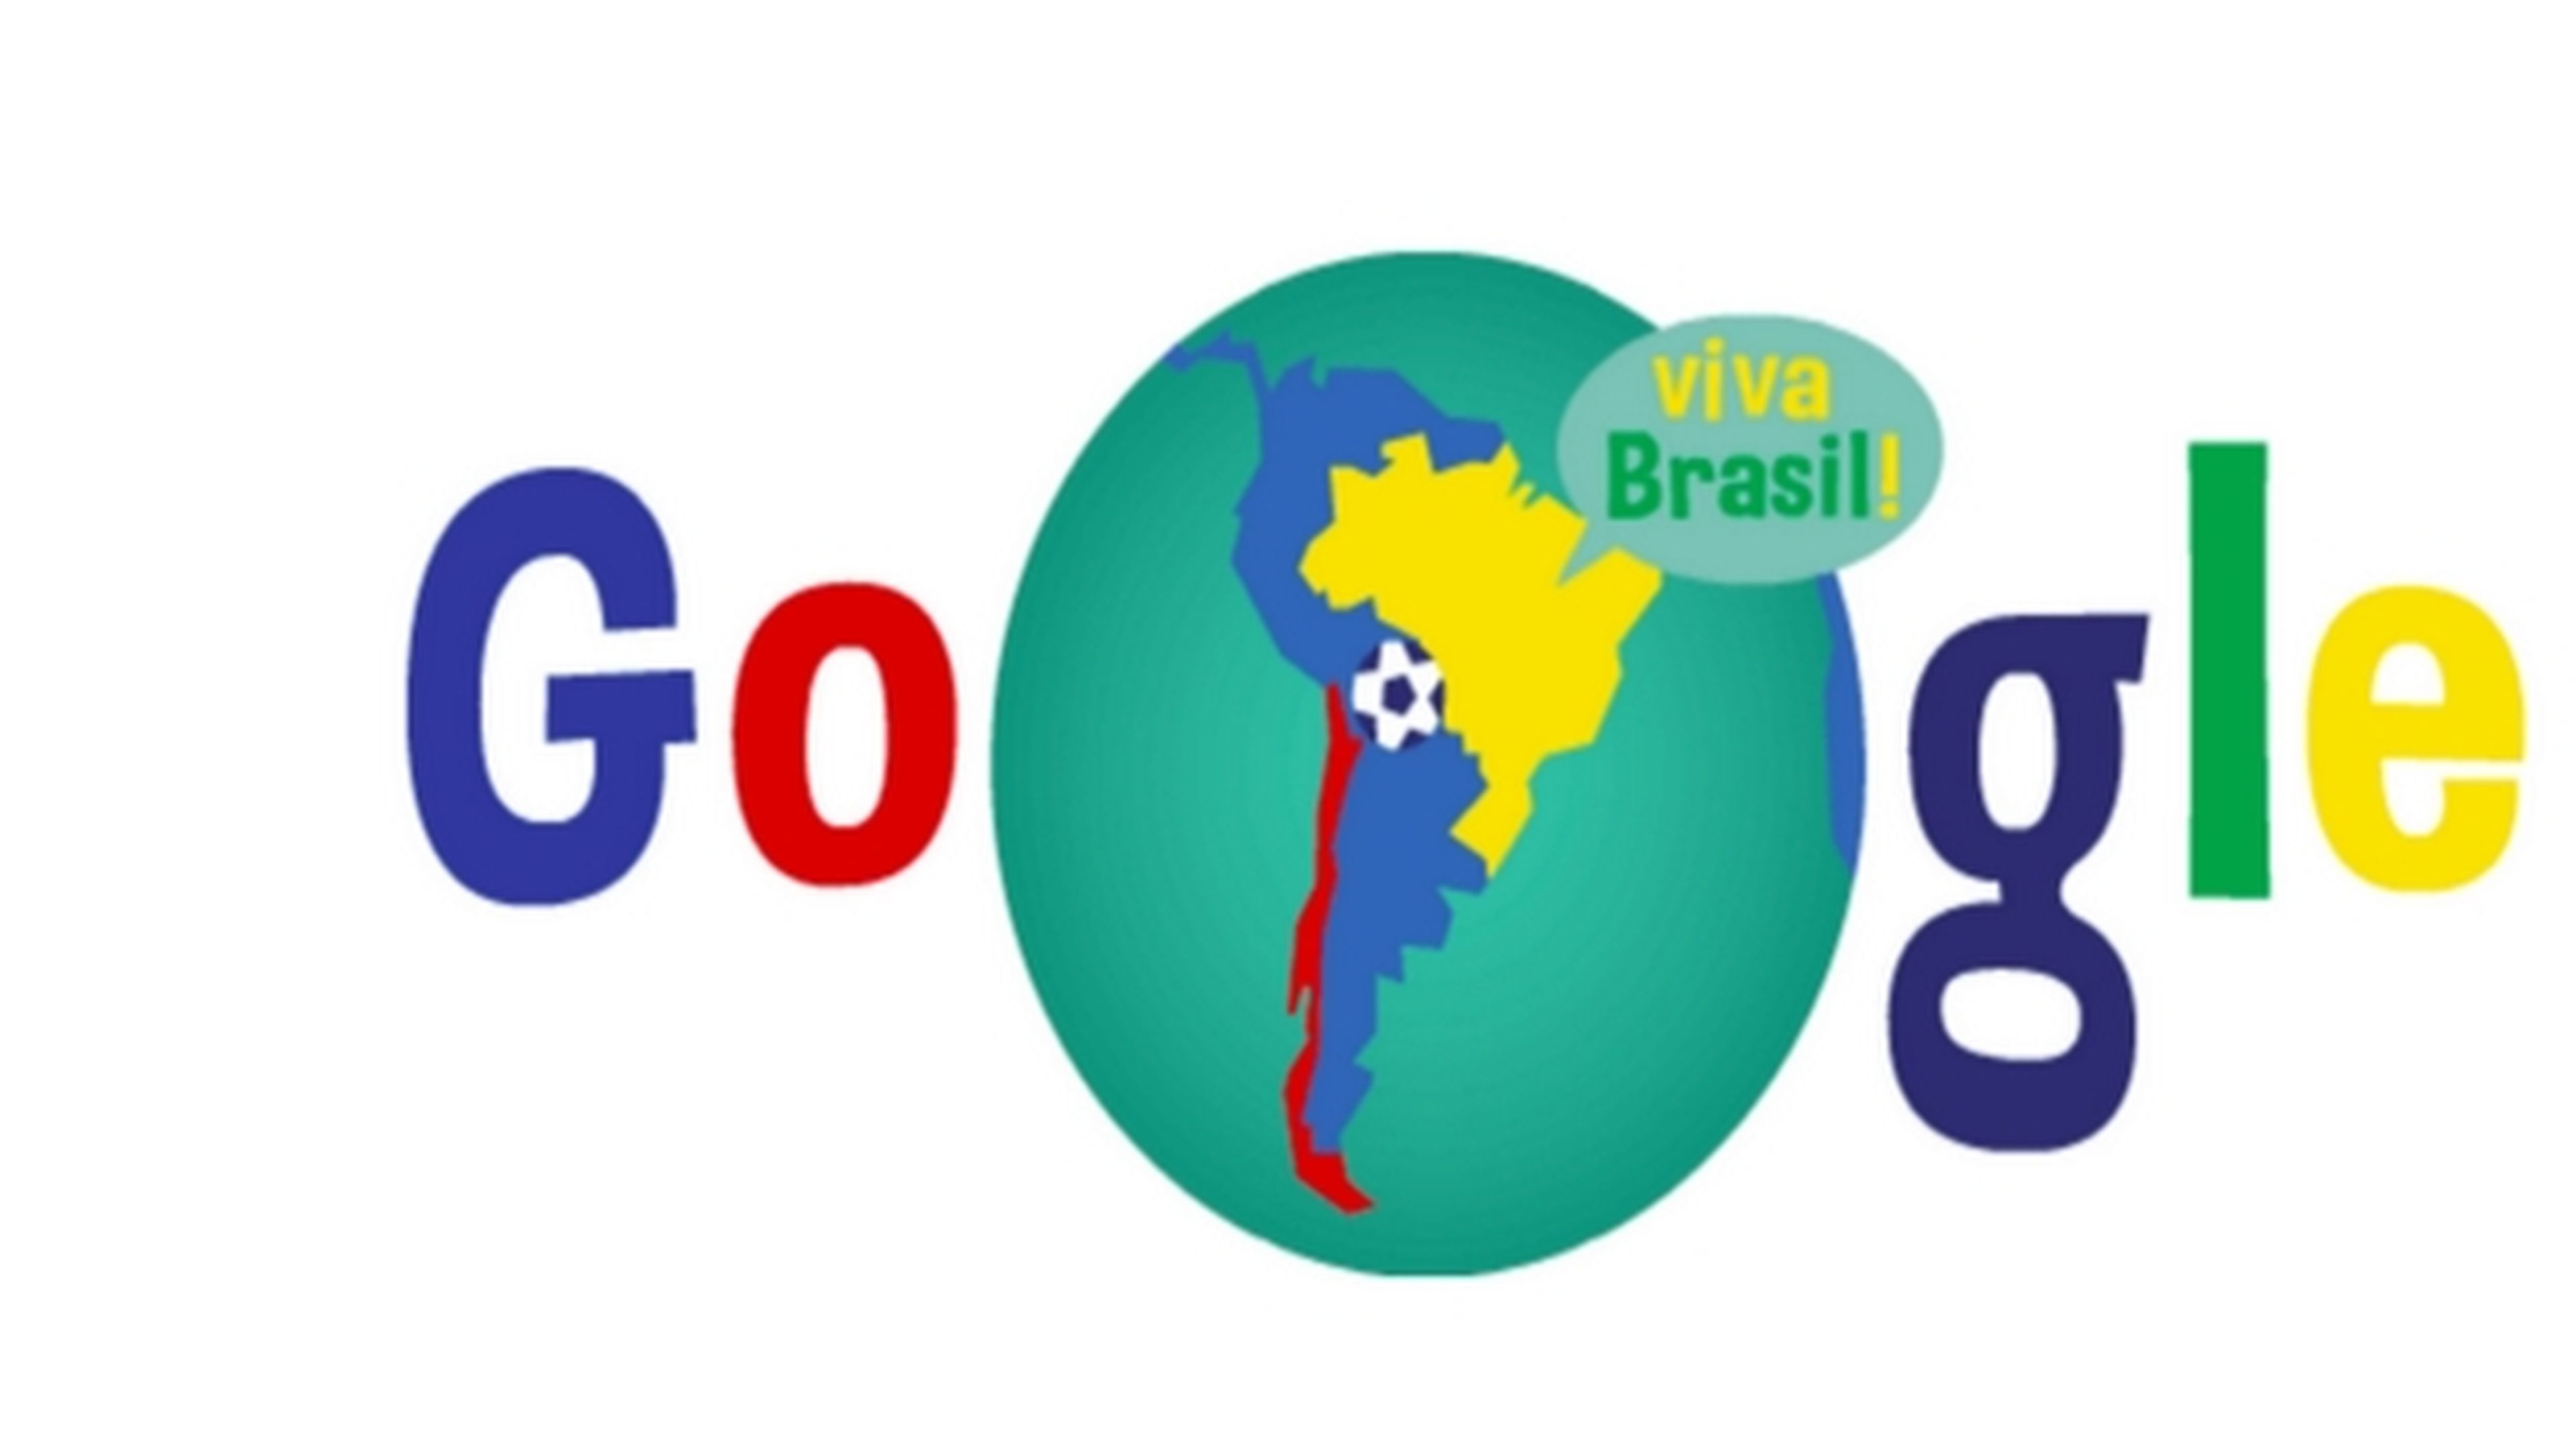 El último doodle de Google, dedicado al partido del Mundial Brasil - Chile, ha causado polémica al otorgar parte del territorio de Argentina, en Tierra de Fuego, a Chile. También metió la pata con un doodle dedicado a las favelas.